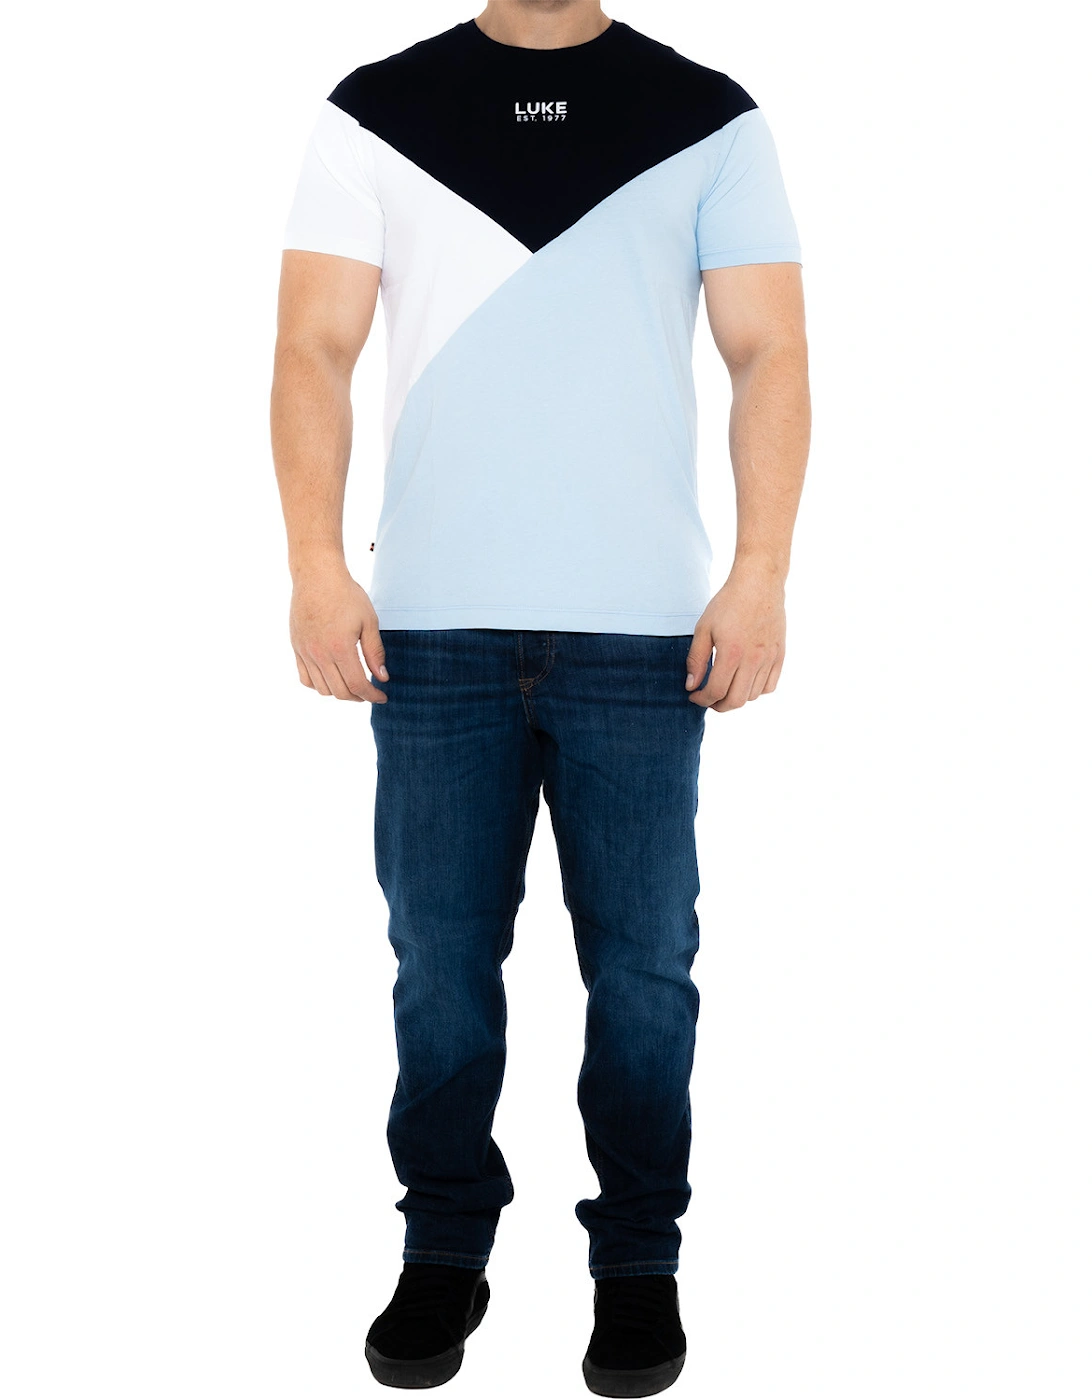 Luke Mens St Lucia T-Shirt (Navy)